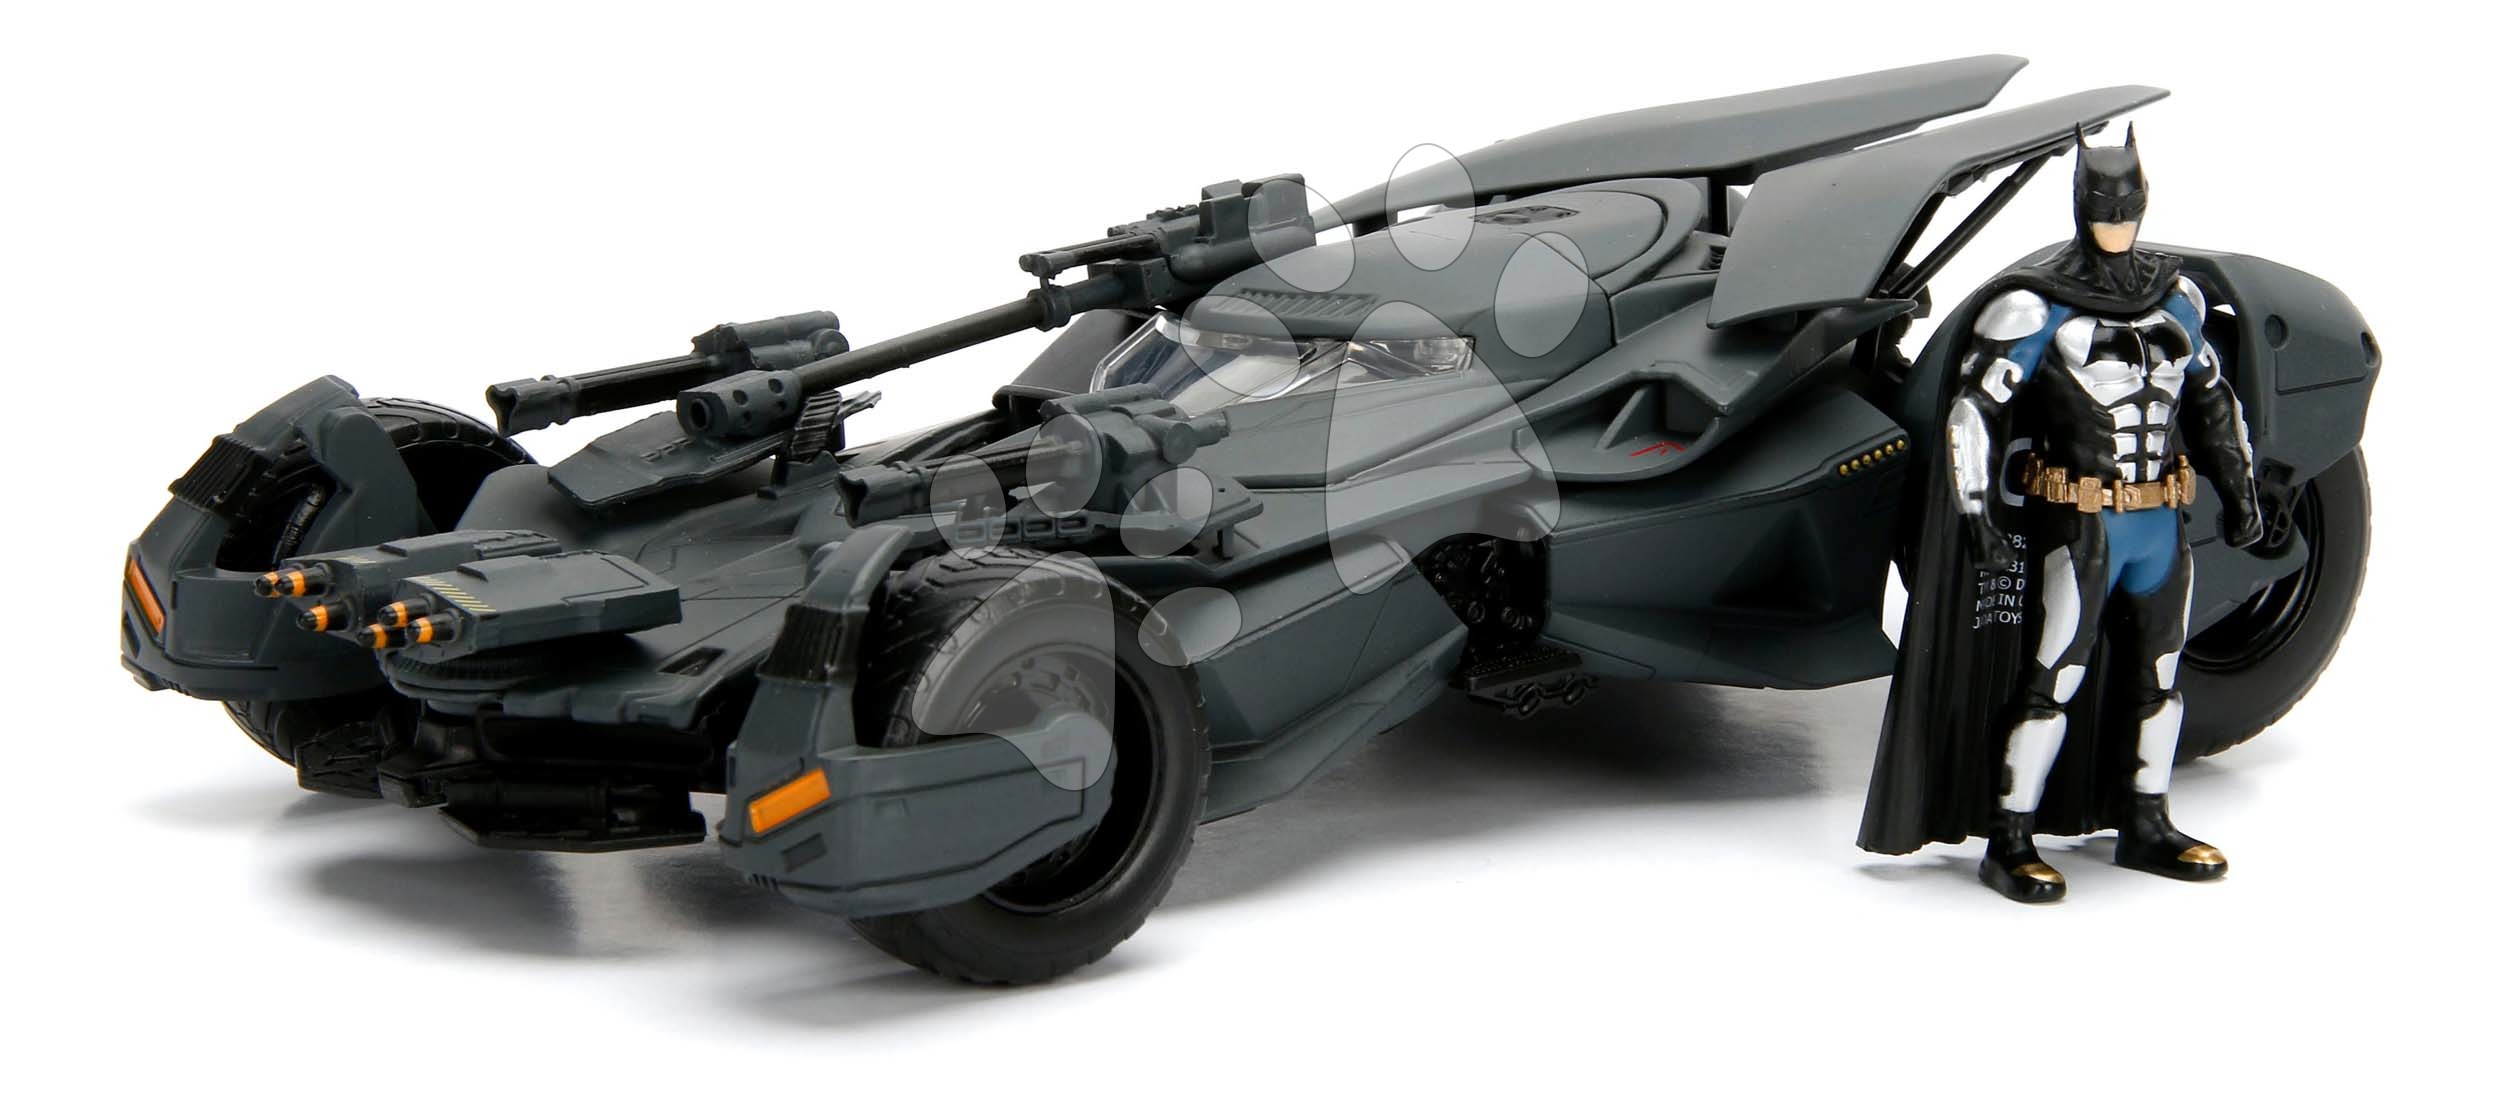 Kisautó Batmobil Justice League Jada fém nyitható pilótafülkével és Batman figurával hossza 22,5 cm 1:24